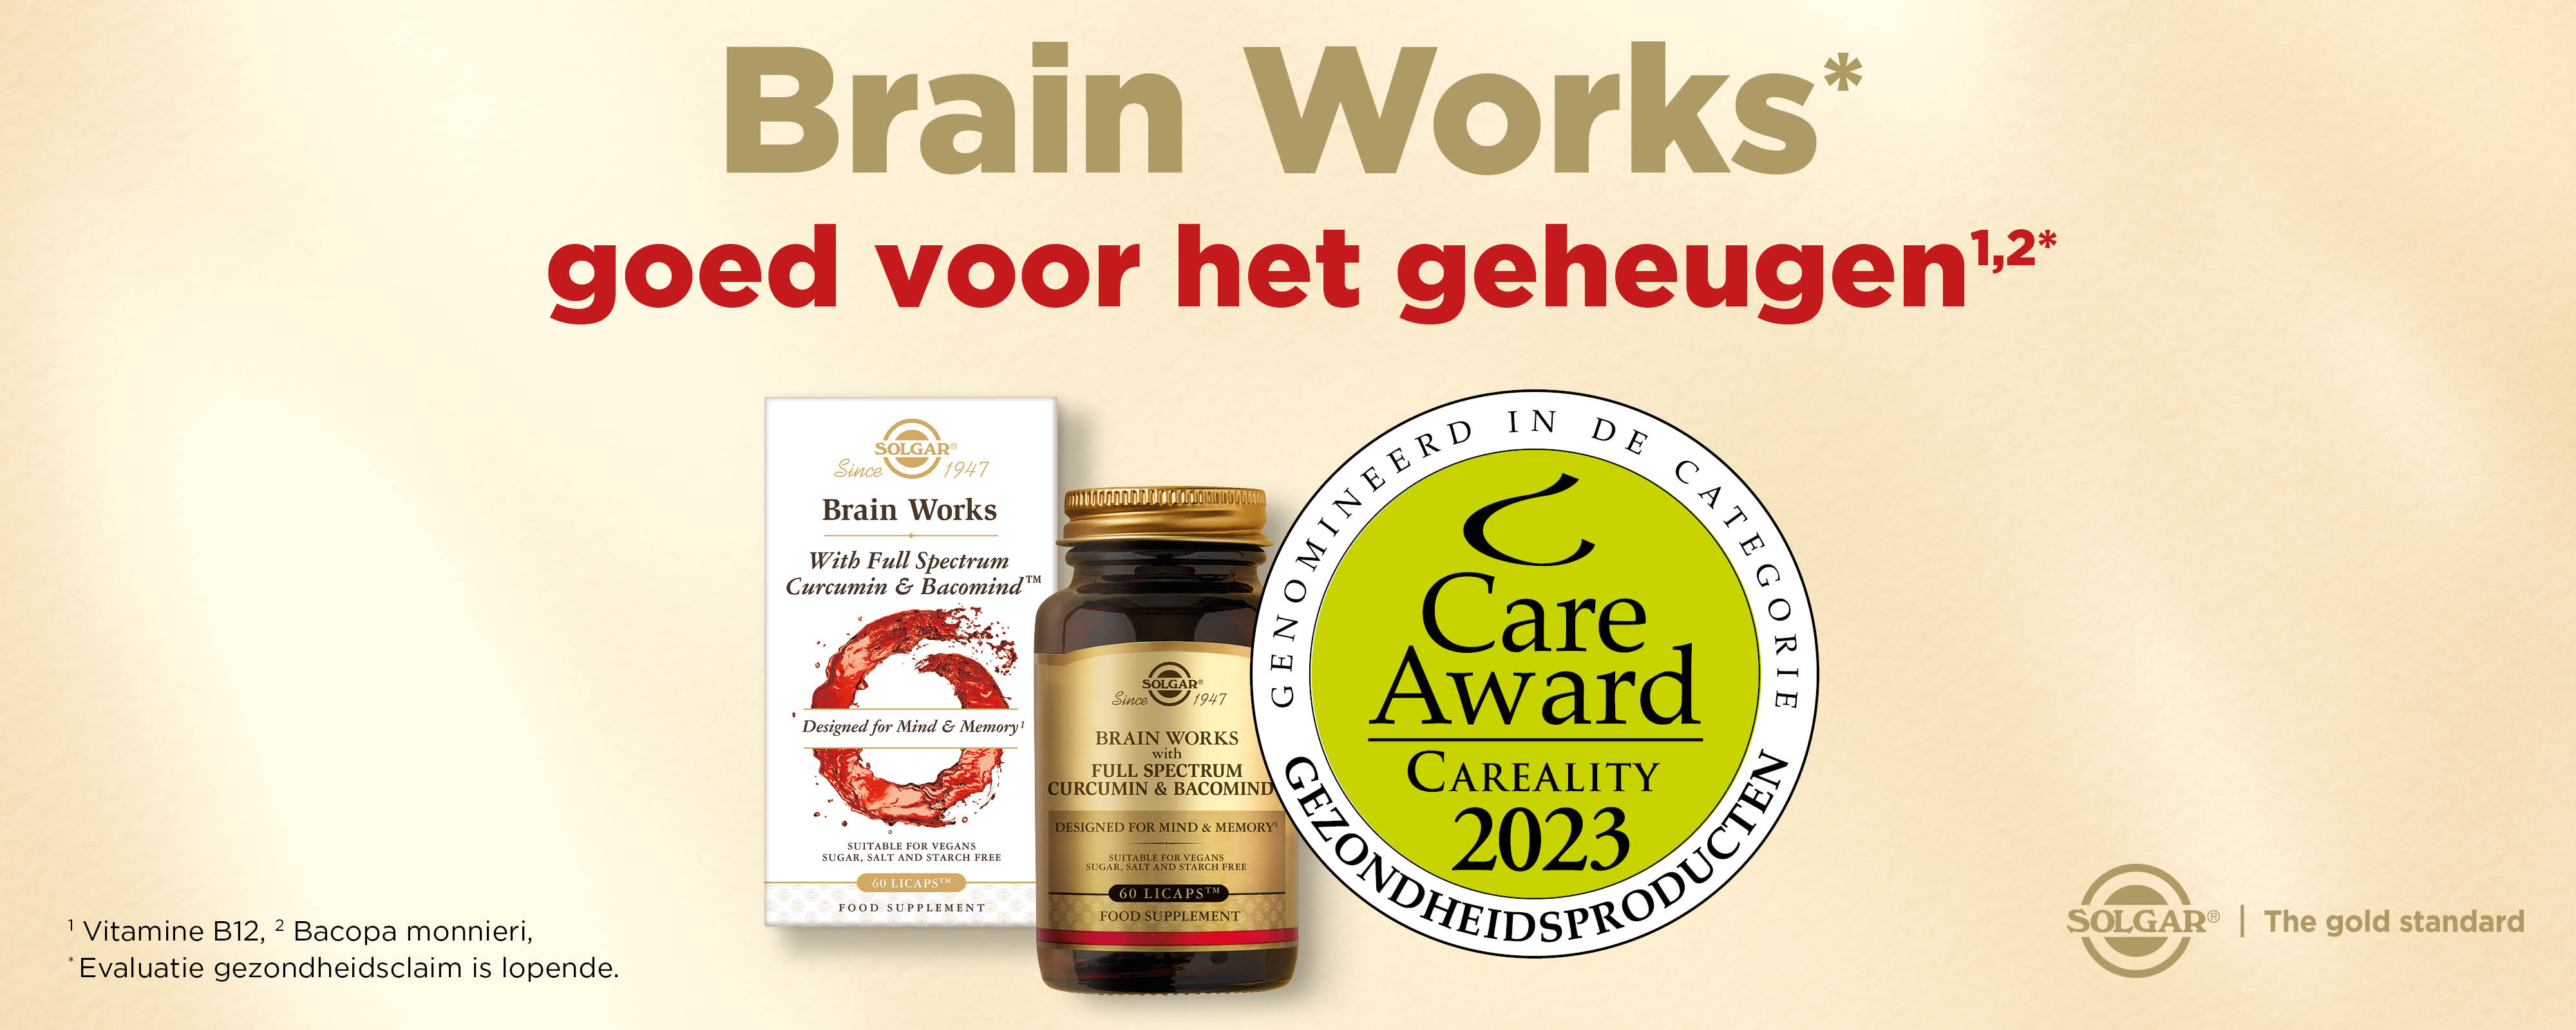 Brain Works genomineerd voor CareAward